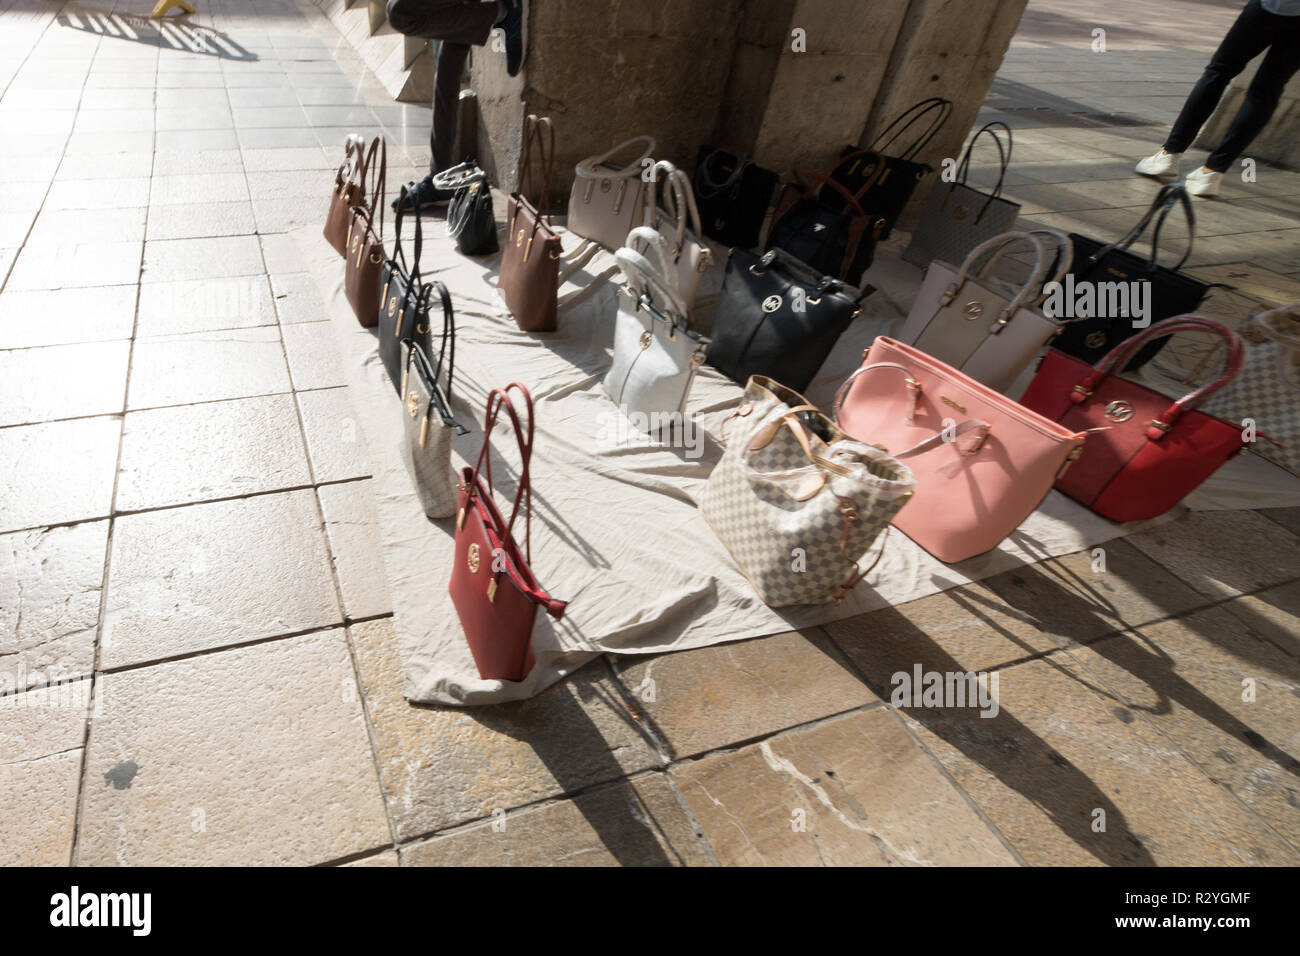 Palma de Mallorca, gefälschte Taschen Verkäufer auf der Straße  Stockfotografie - Alamy